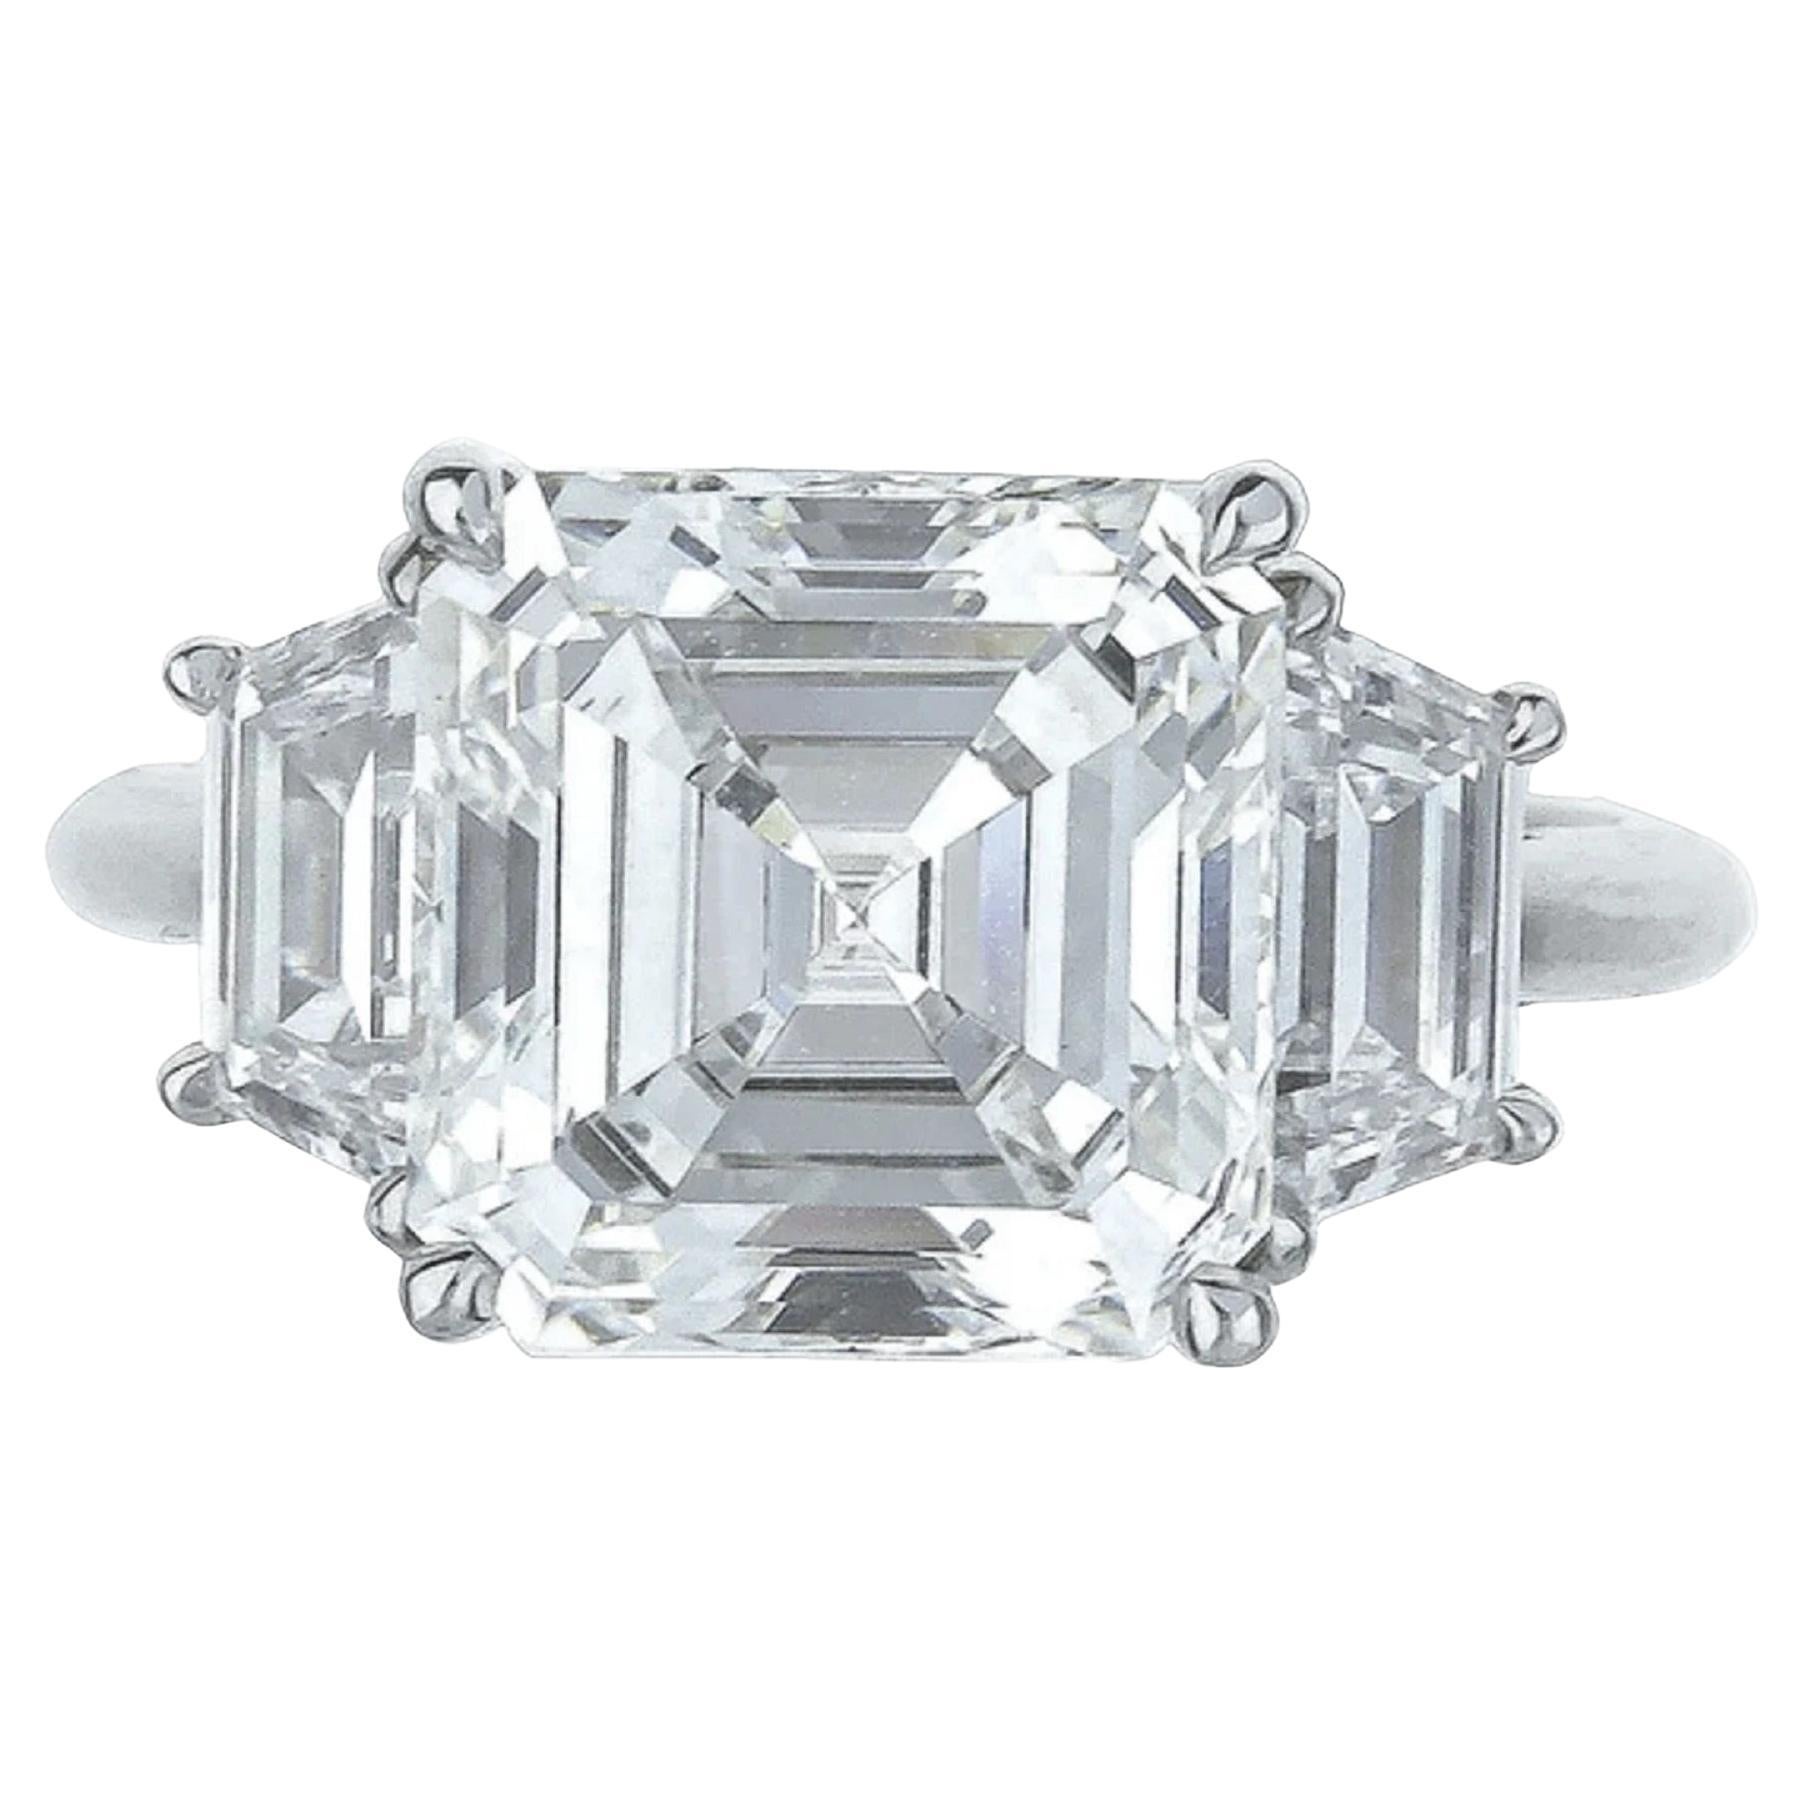 Diamant taille Asscher certifié GIA de 4 carats de pureté sans défaut